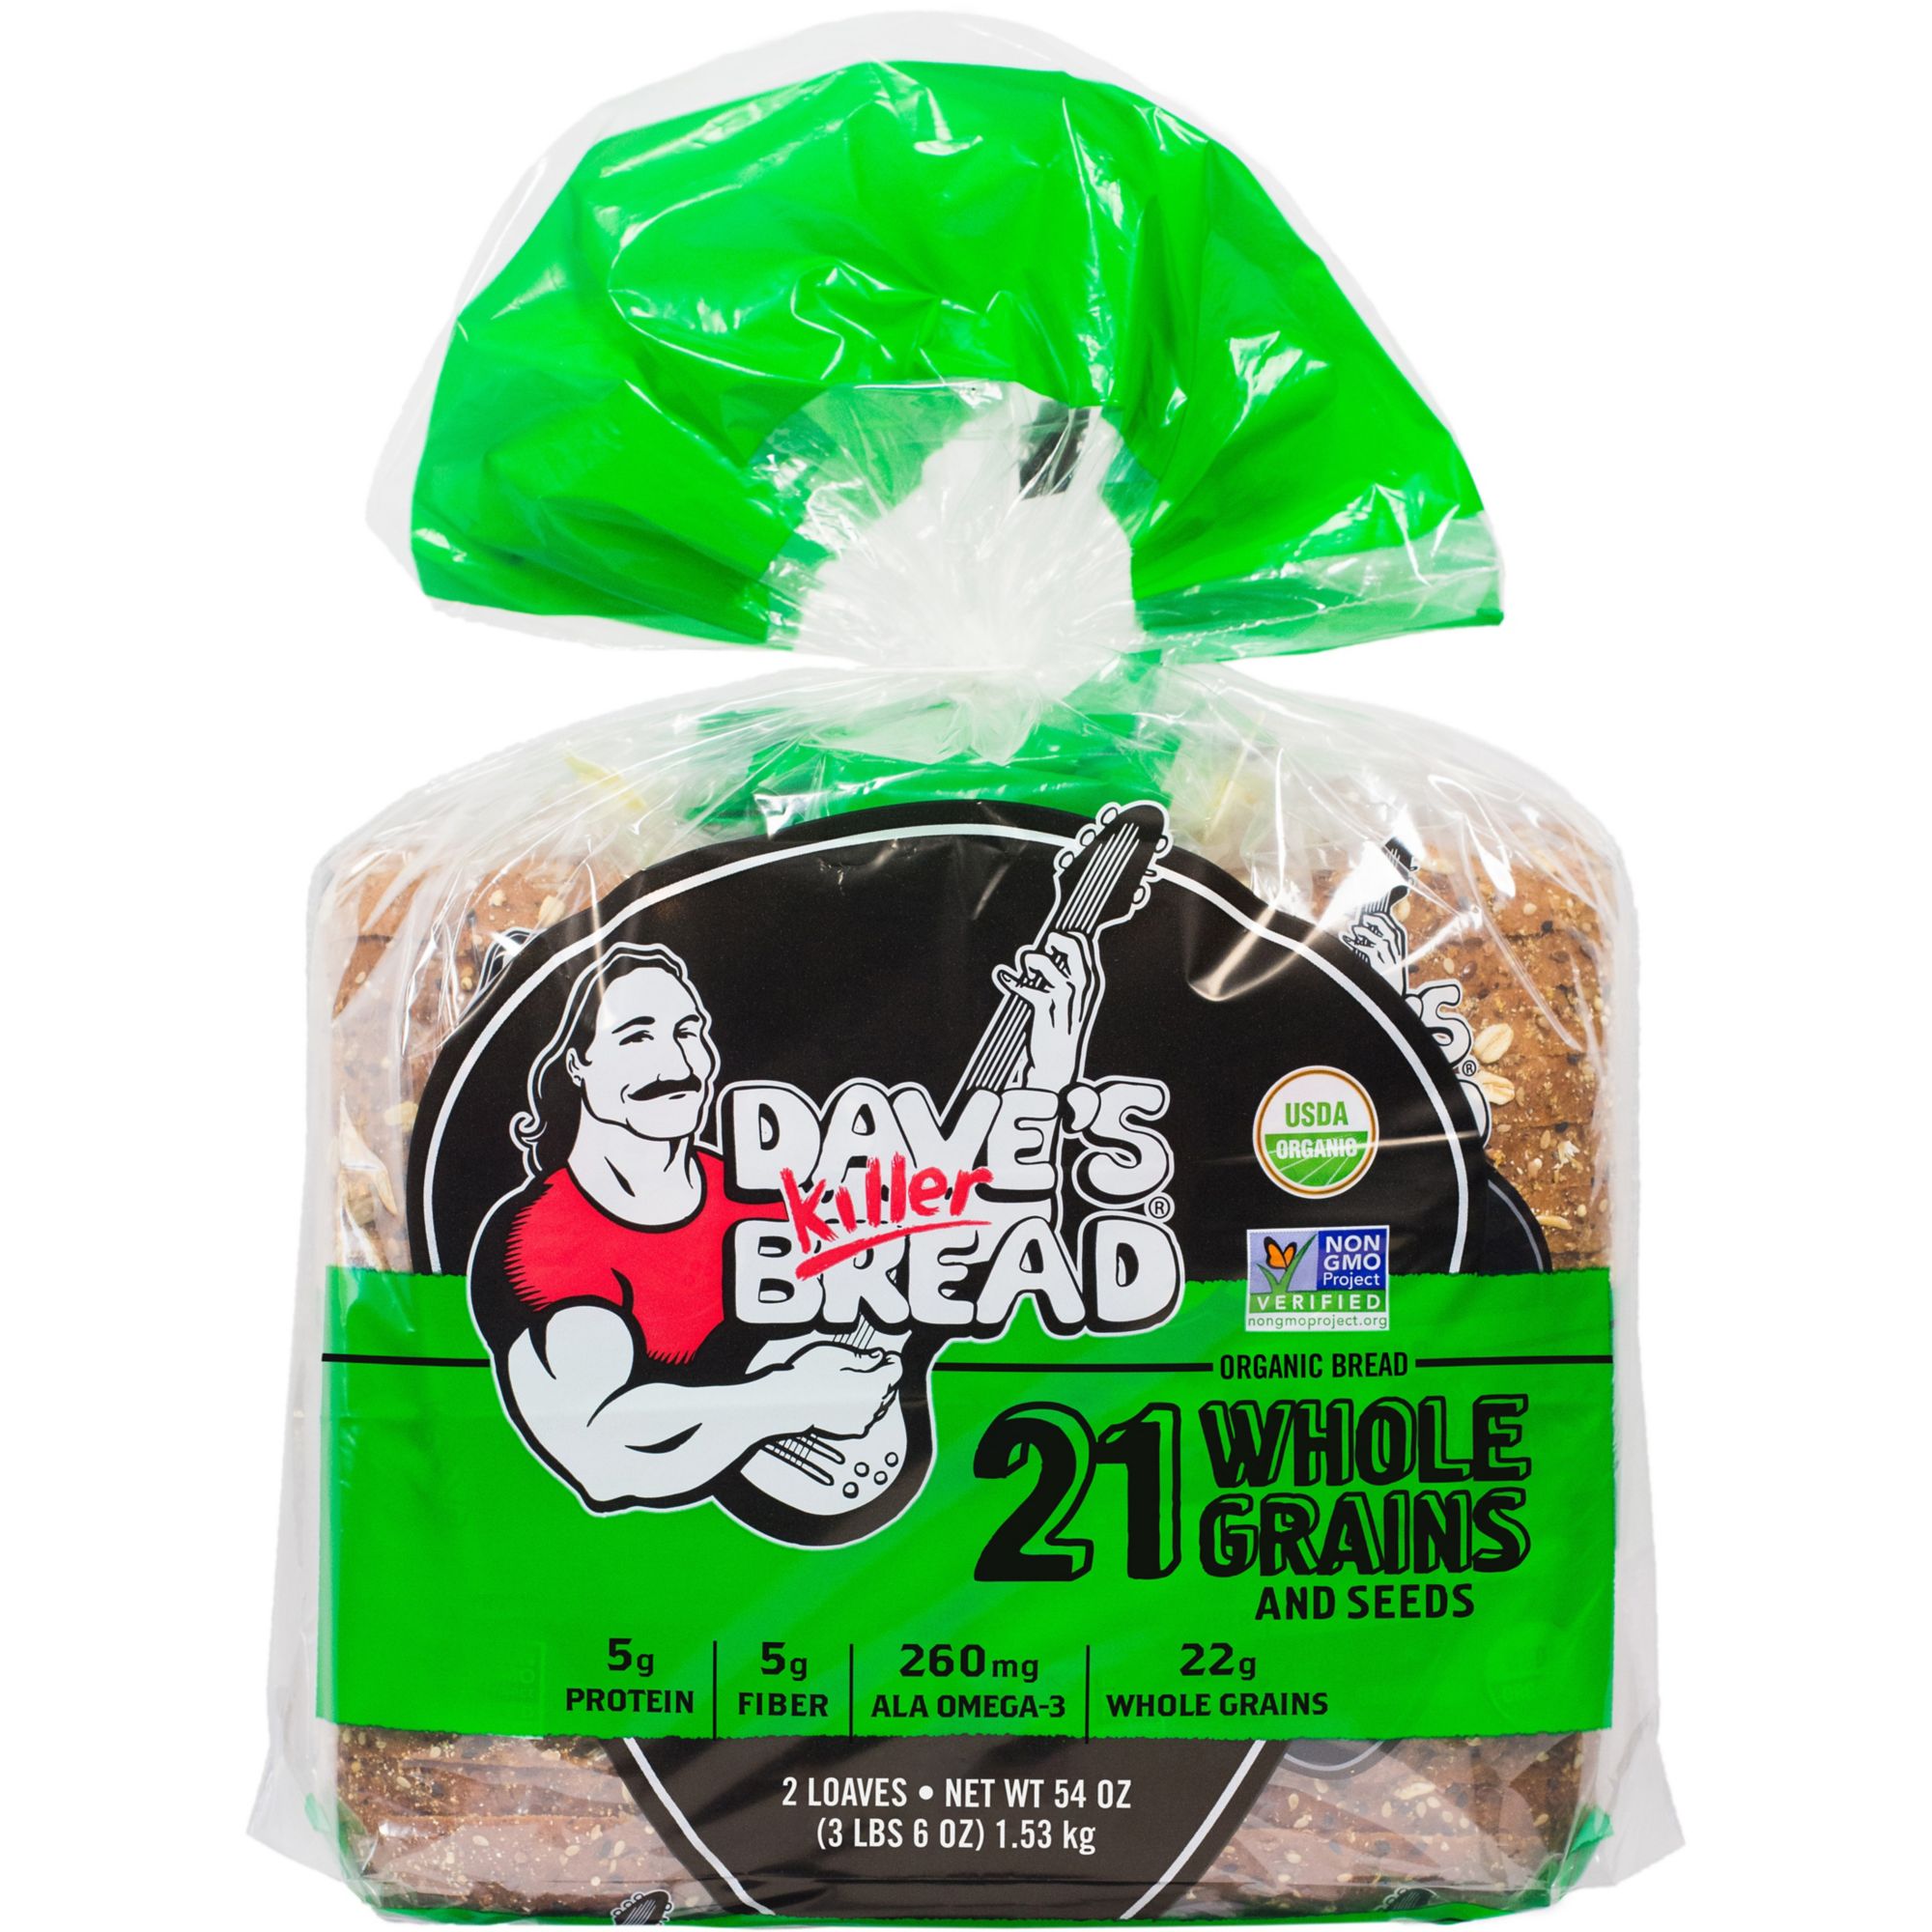 Dave's Killer Bread 21 Whole Grain Bread, 2 ct./27 oz.